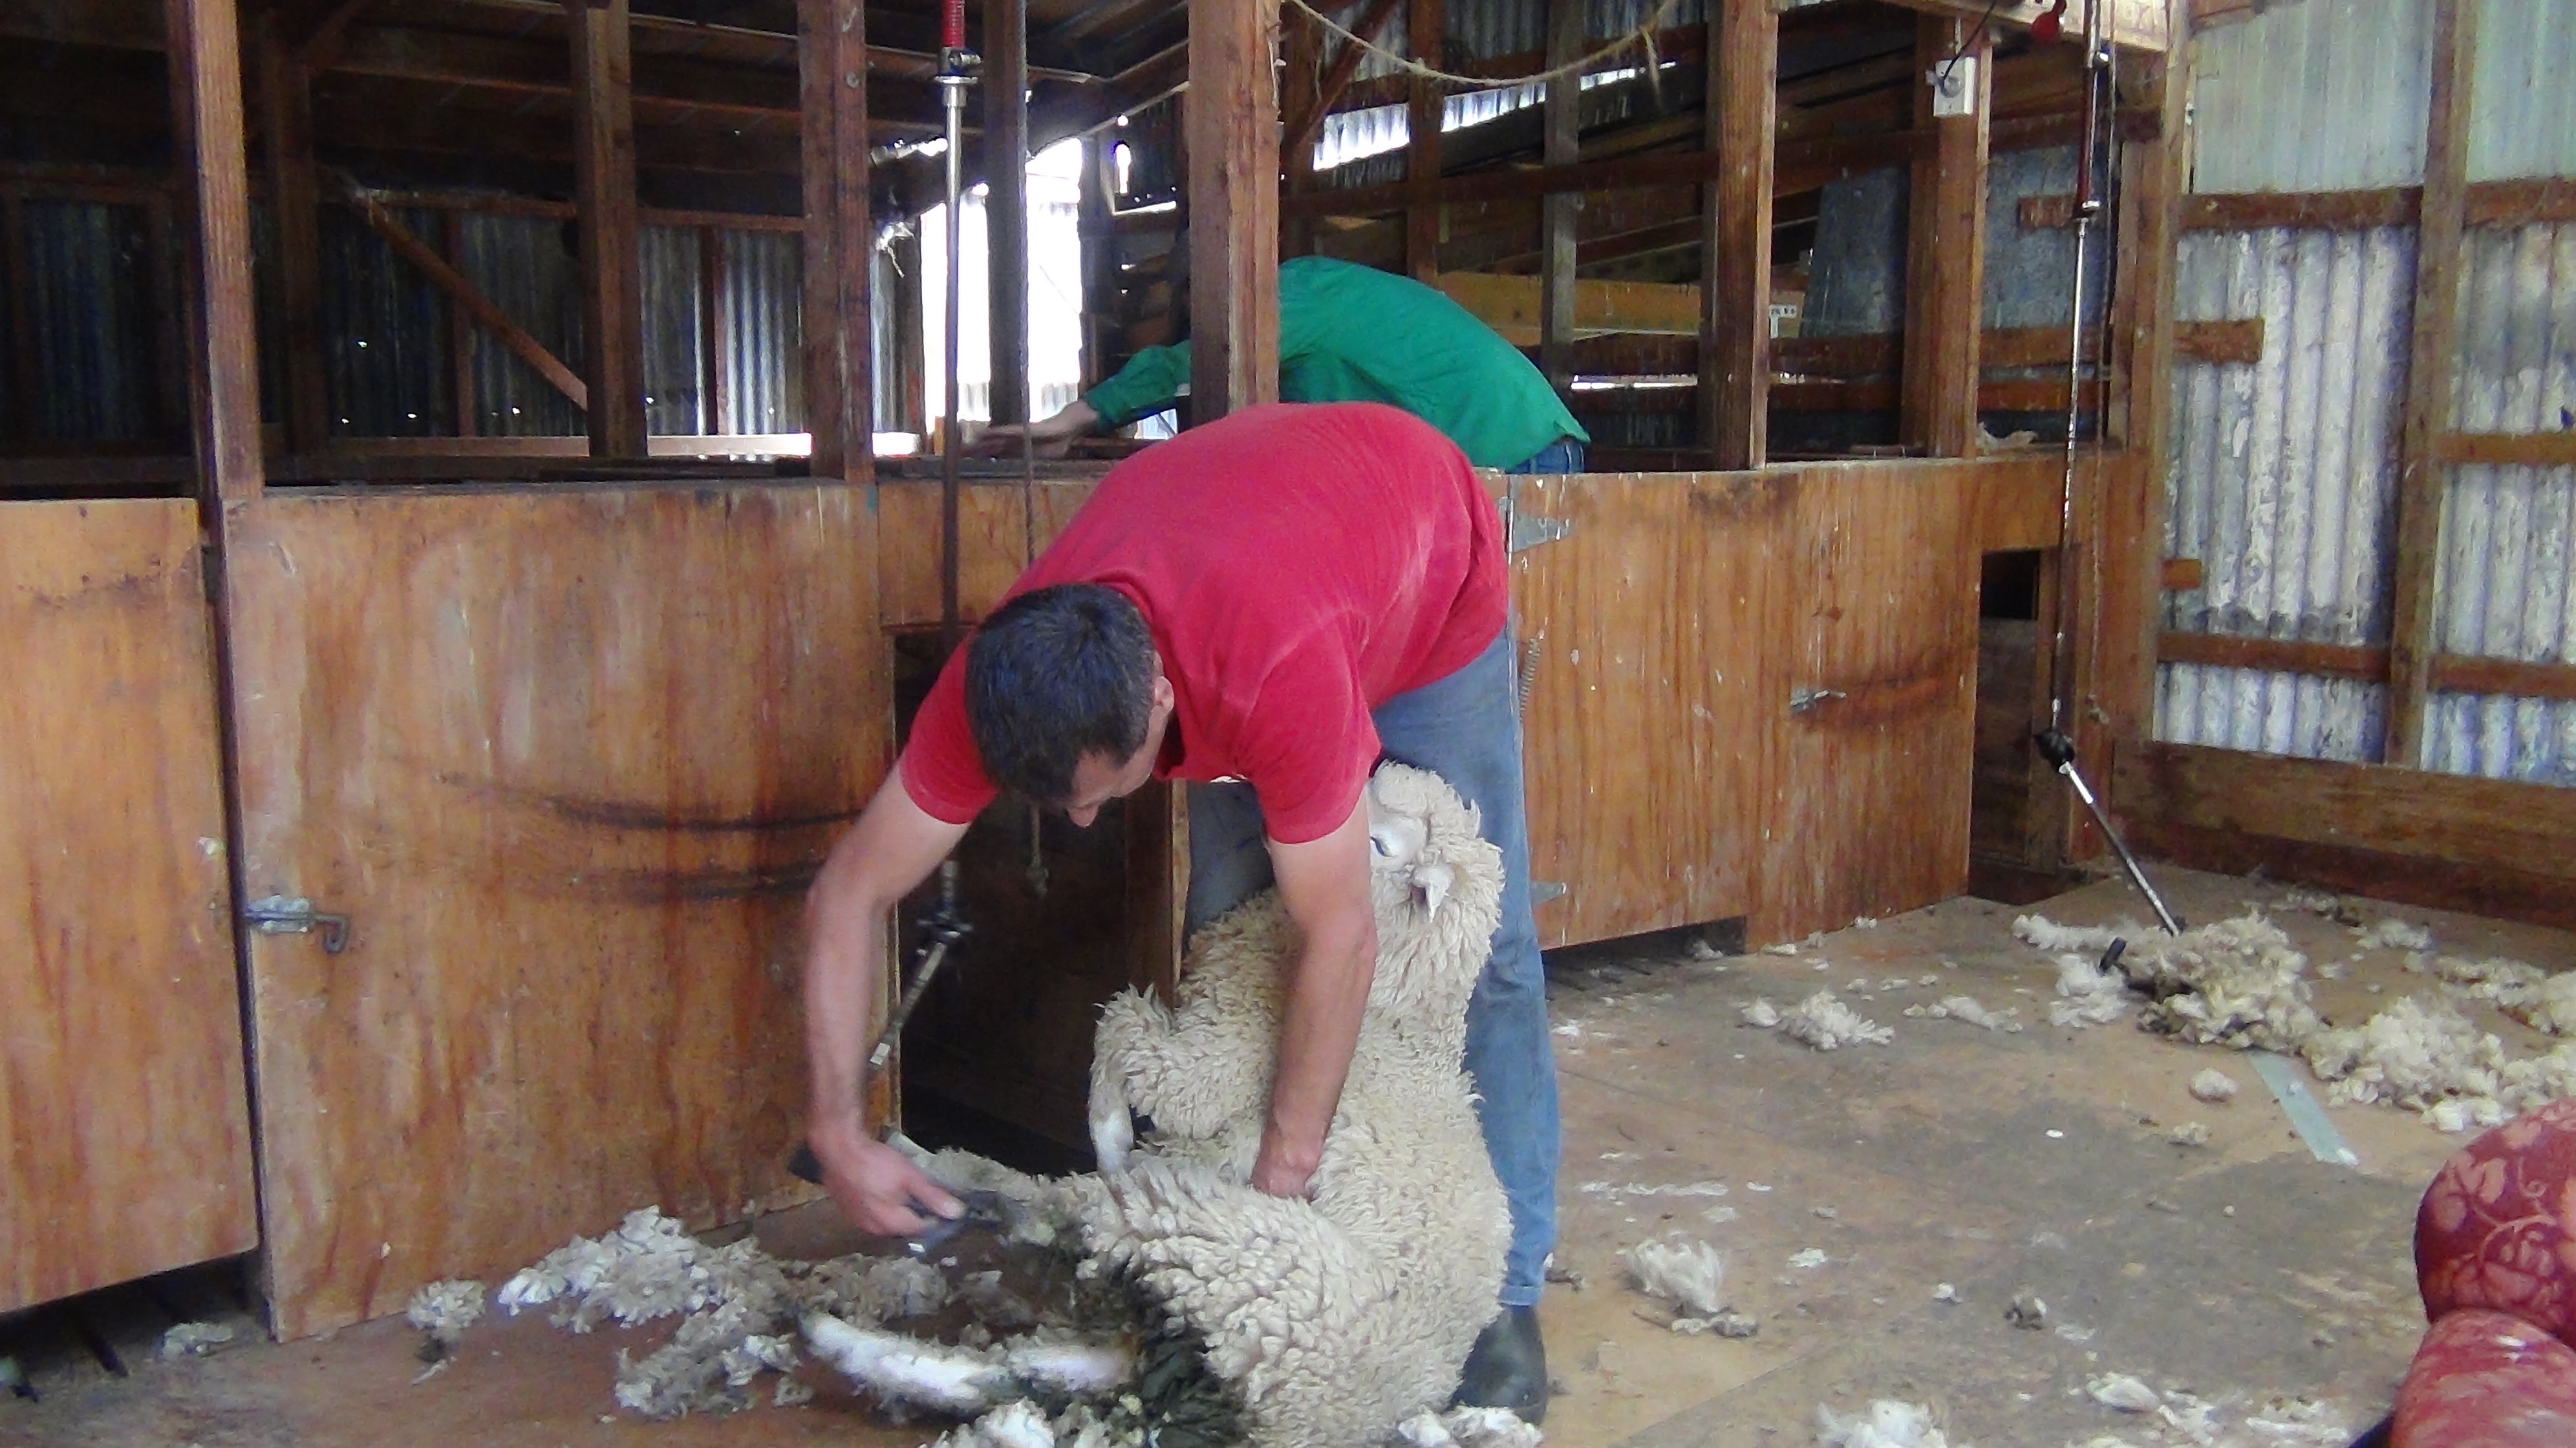 Wayne shearing a sheep in 2017